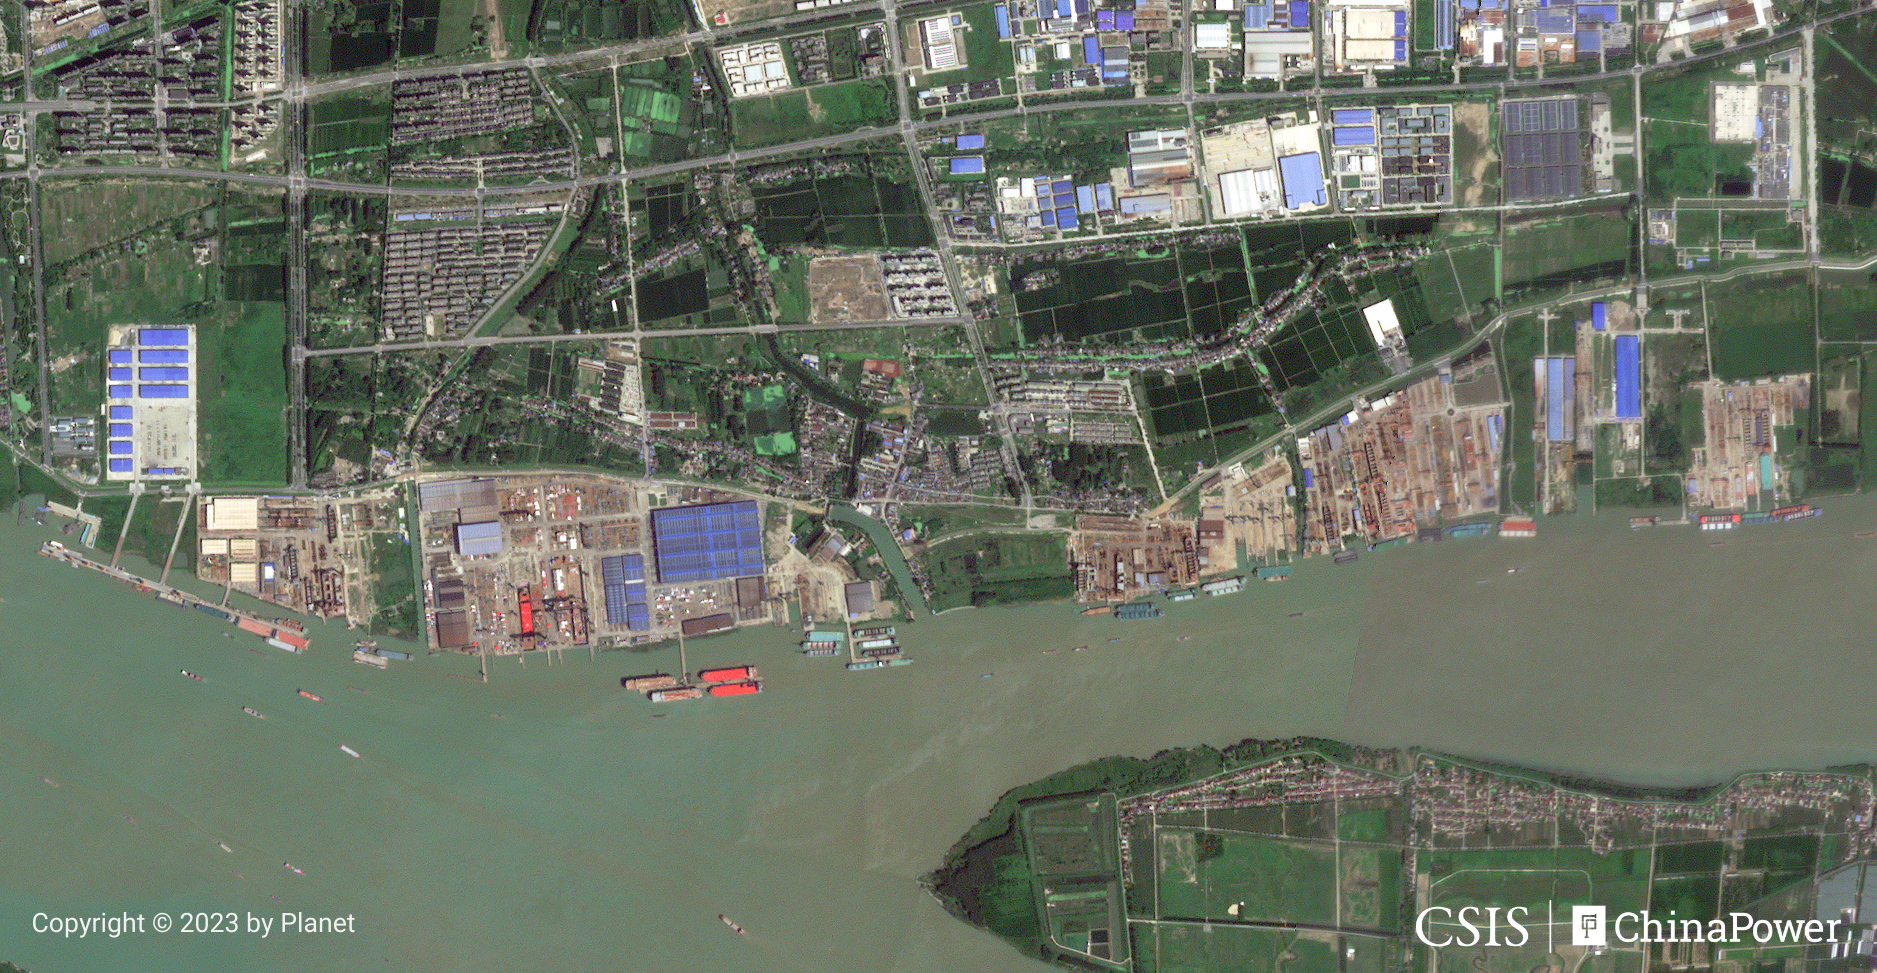 Jinling Shipyard